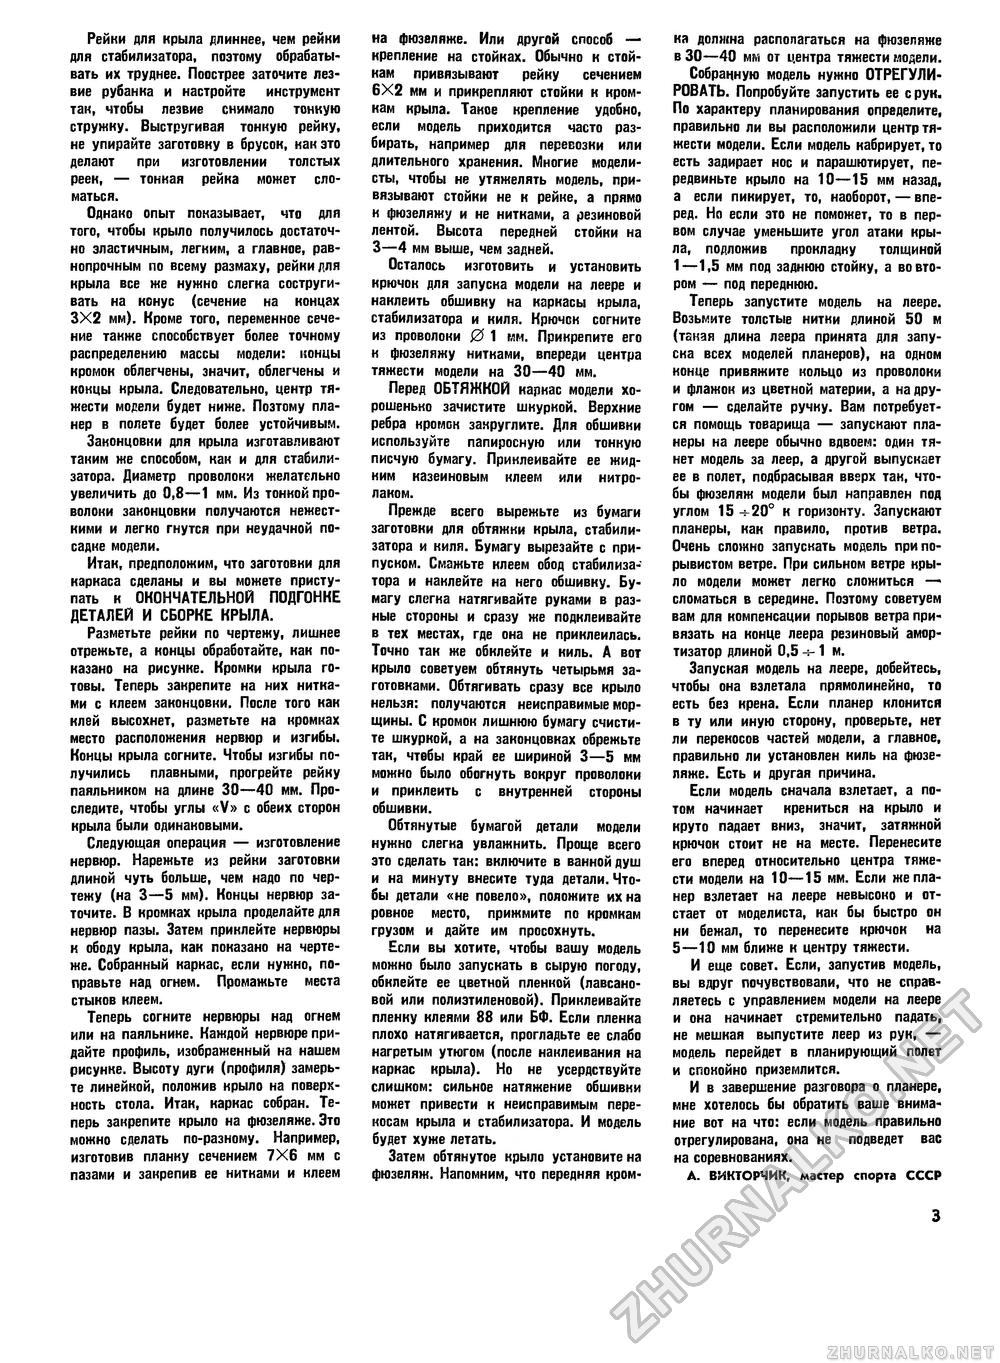 Юный техник - для умелых рук 1977-12, страница 3